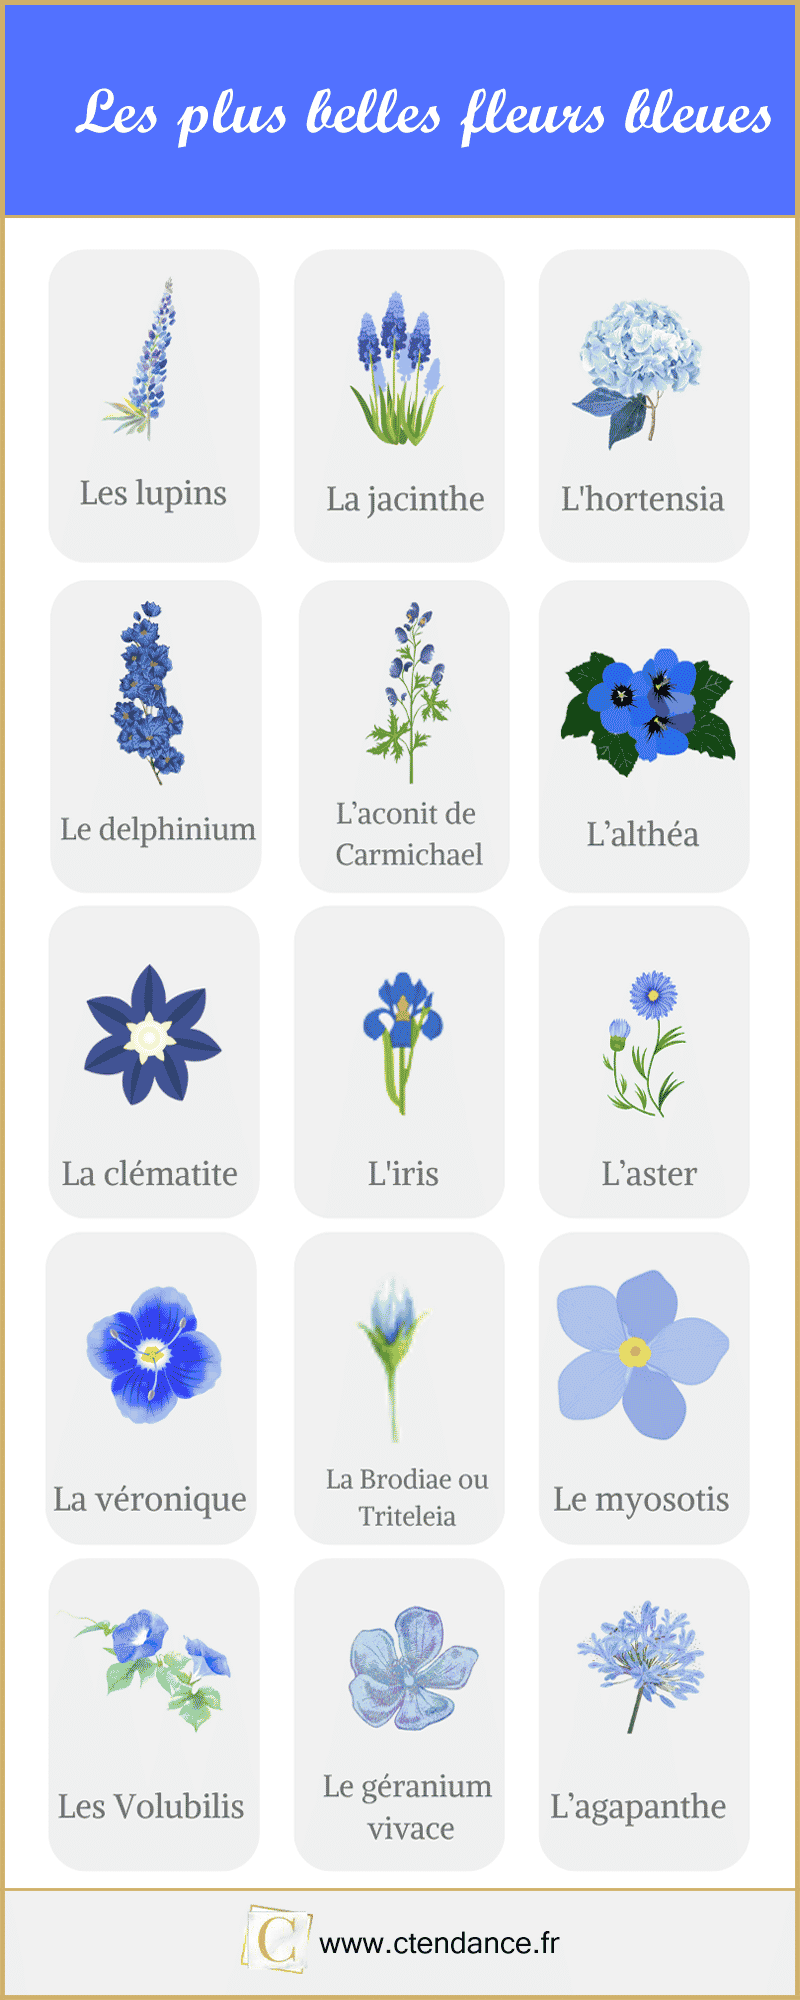 Les plus belles fleurs bleues en image